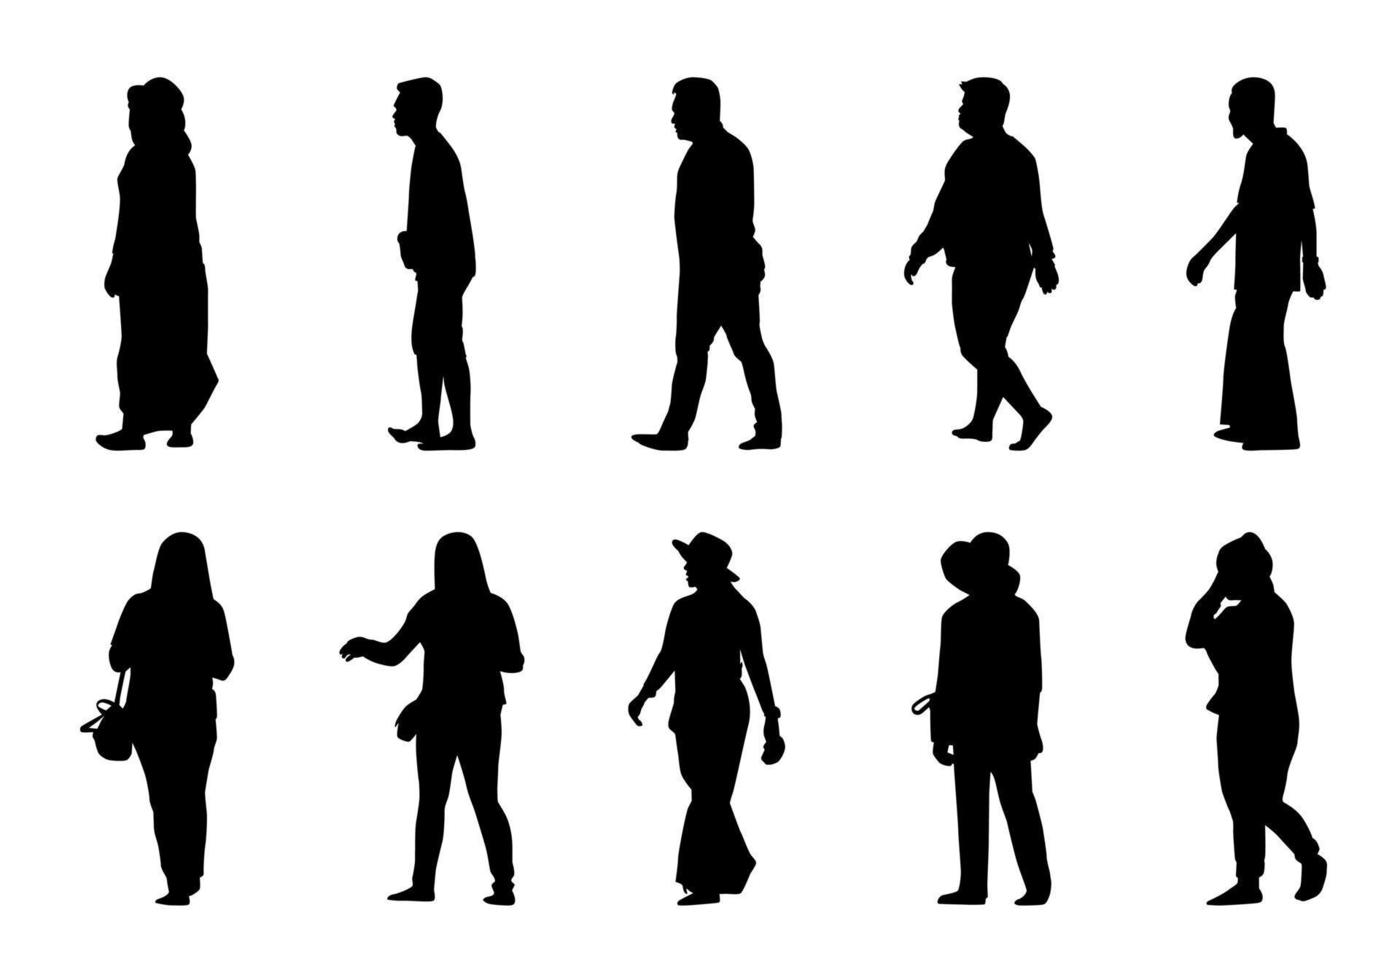 silueta de personas caminando sobre fondo blanco, colección de vectores de mujeres y hombres en la sombra